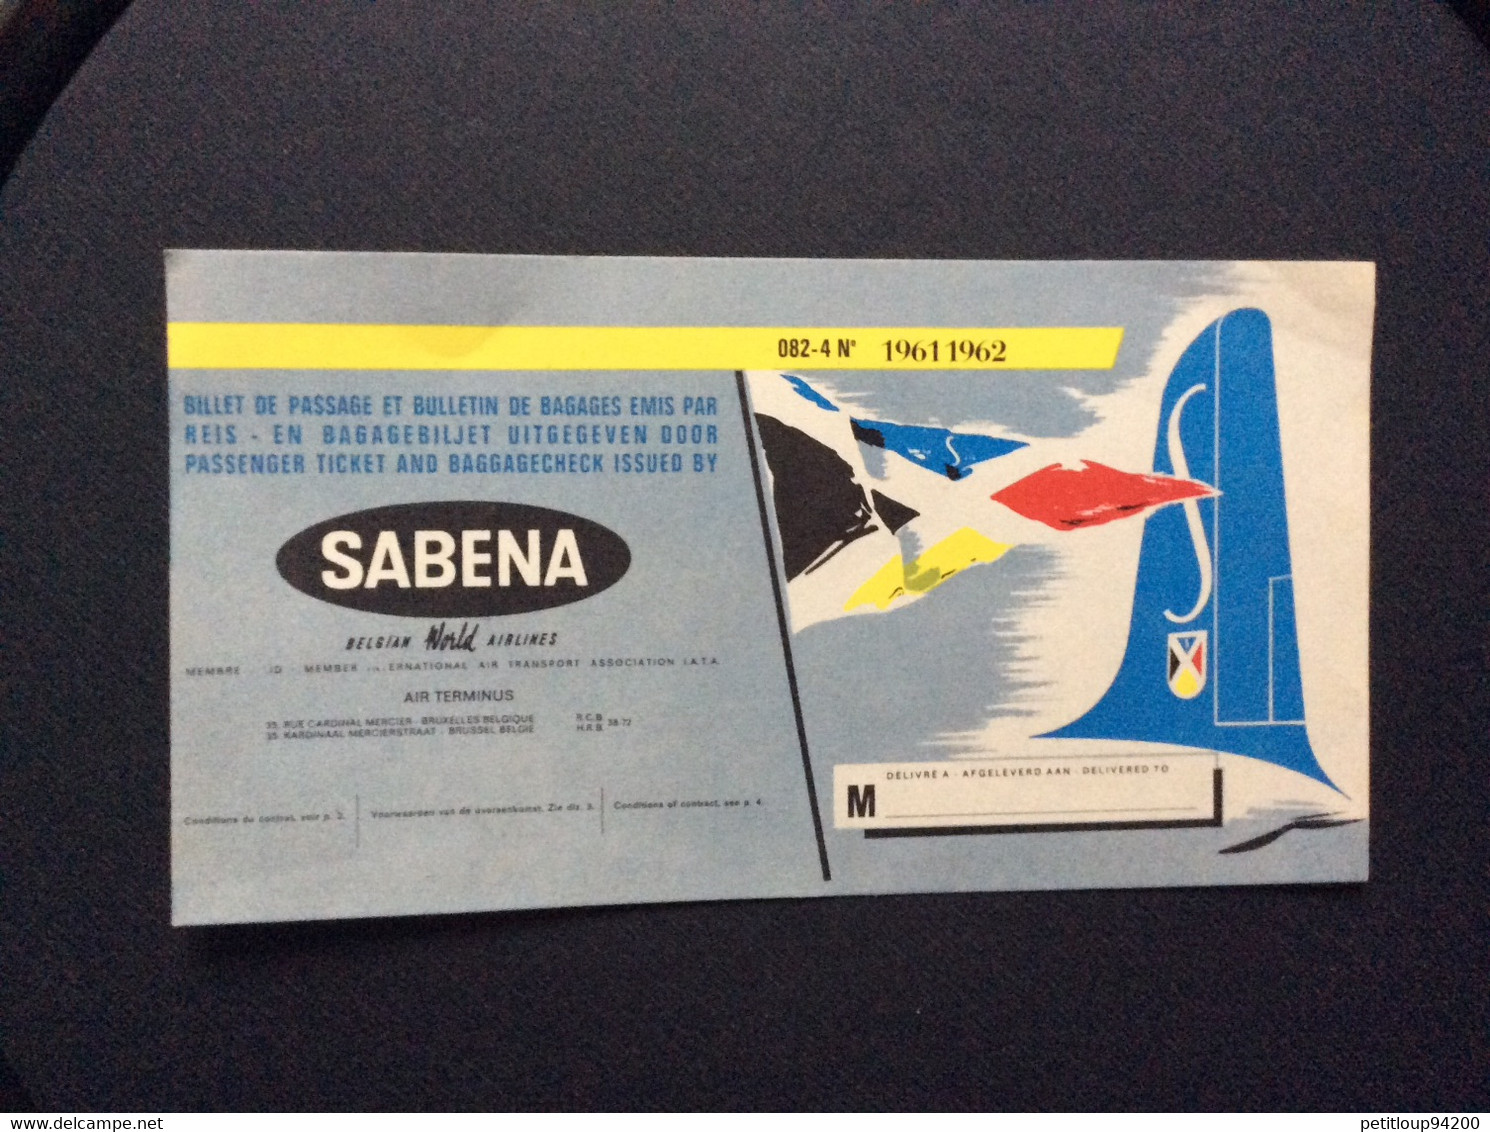 SABENA  Publicite  BILLET DE PASSAGE ET BULLETIN DE BAGAGES  PASSENGER TICKET AND BAGGAGE CHECK  1961 1962 - Advertenties